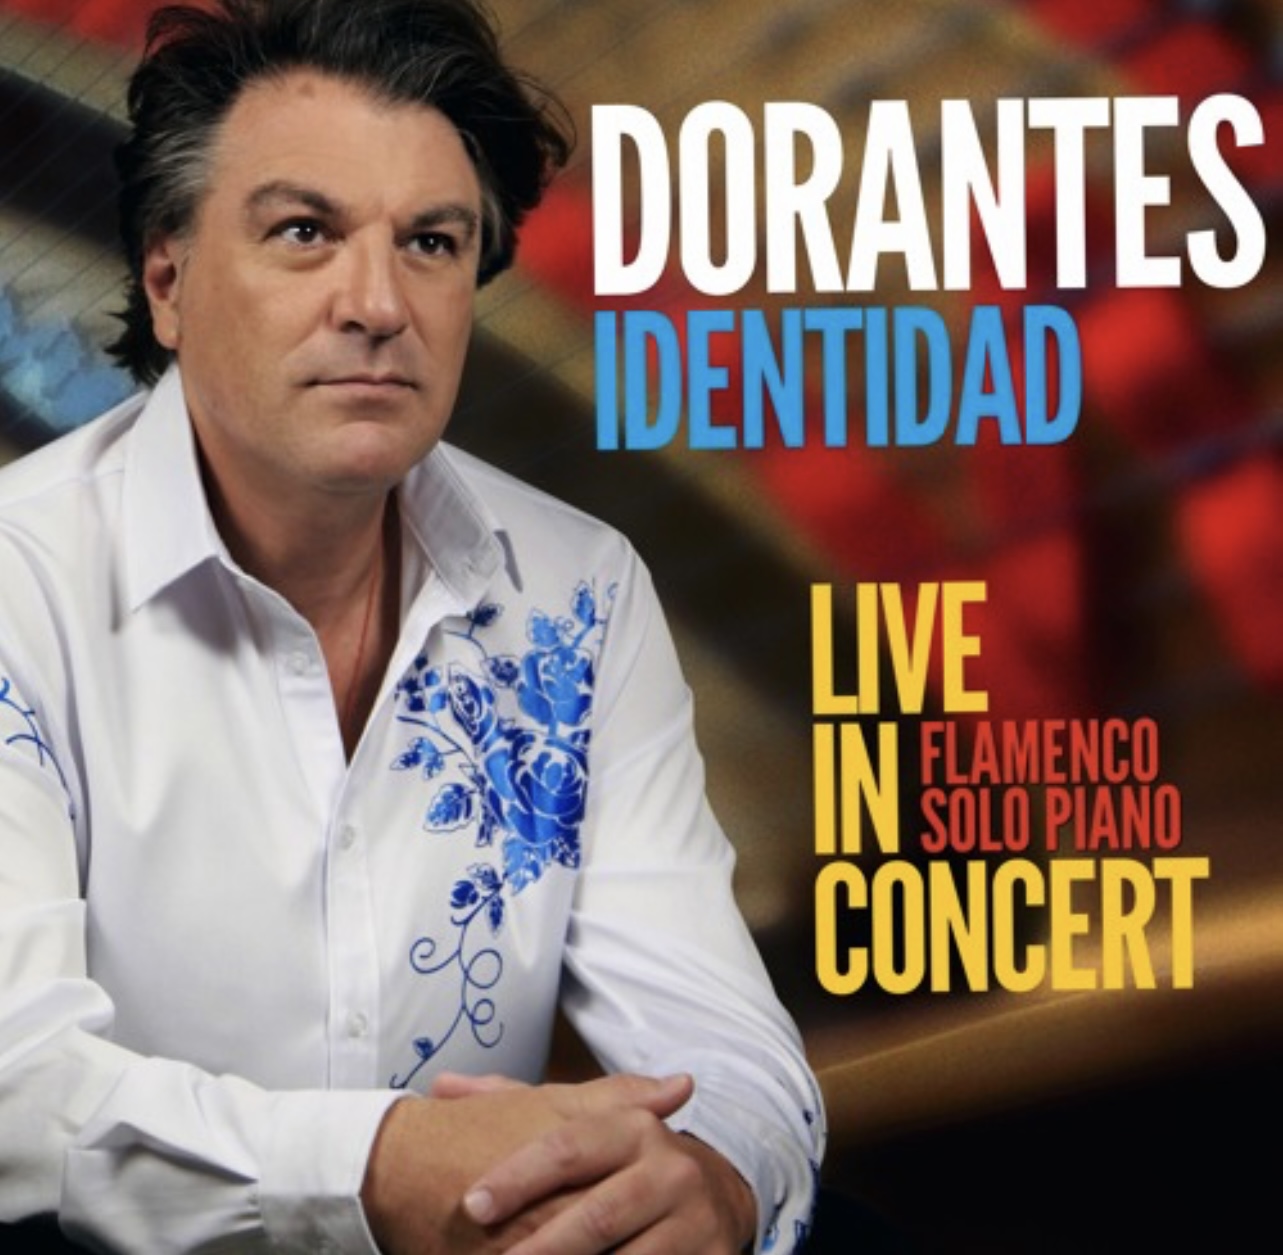 Dorantes graba en directo y a piano su nuevo álbum “IDENTIDAD” – Entrevista online